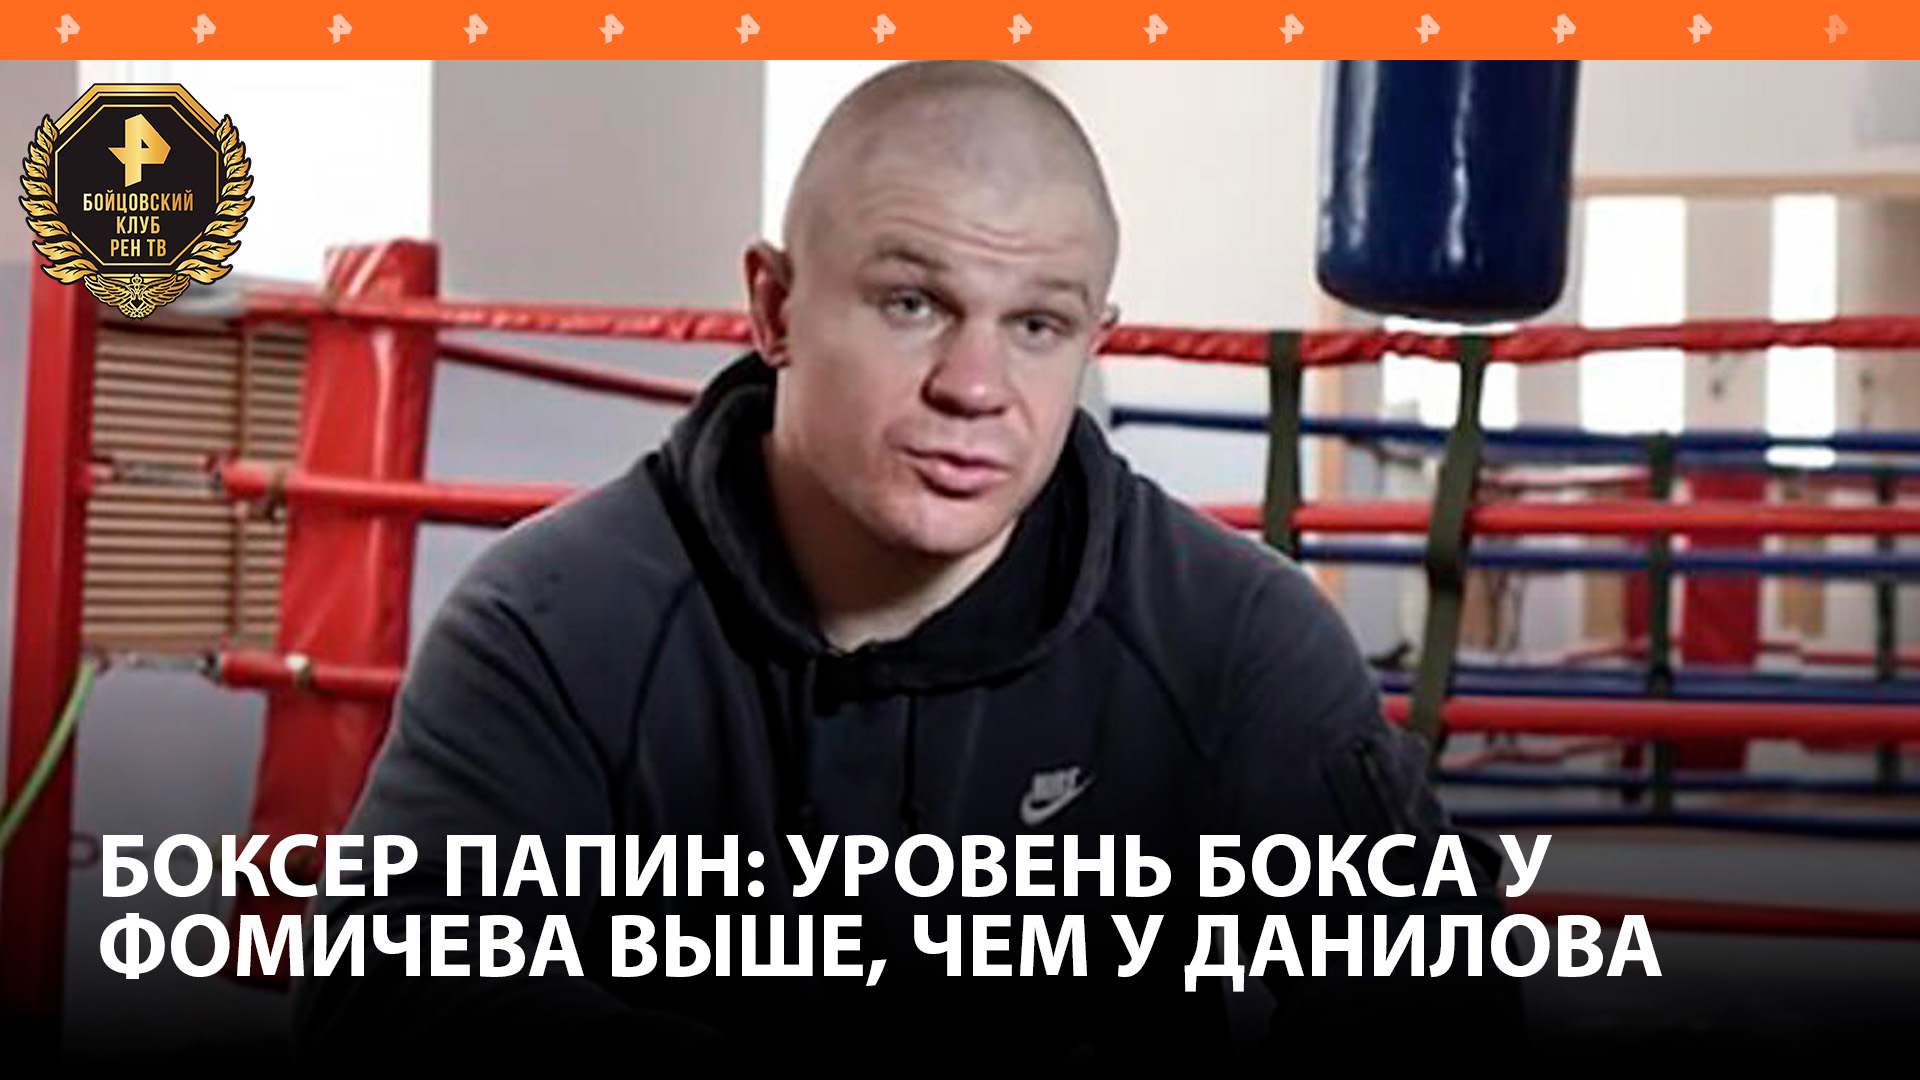 Уровень бокса Олега Фомича намного выше, чем у Николая Данилова —боксер Алексей Папин